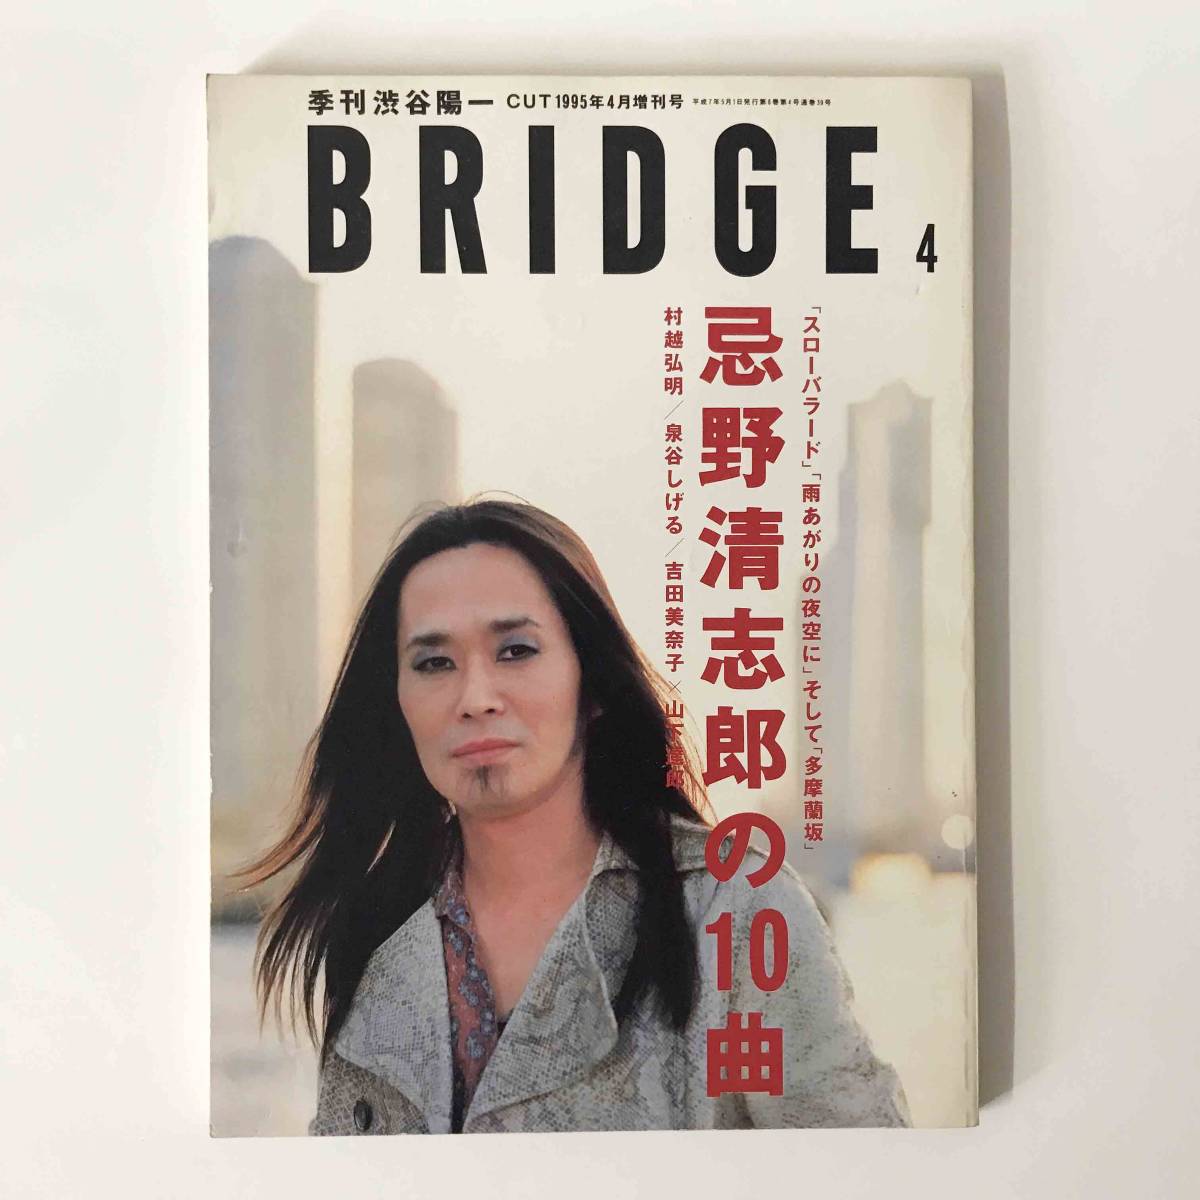  Bridge BRIDGE Imawano Kiyoshiro сезон . Shibuya . один CUT1995 год 4 месяц больше . номер 